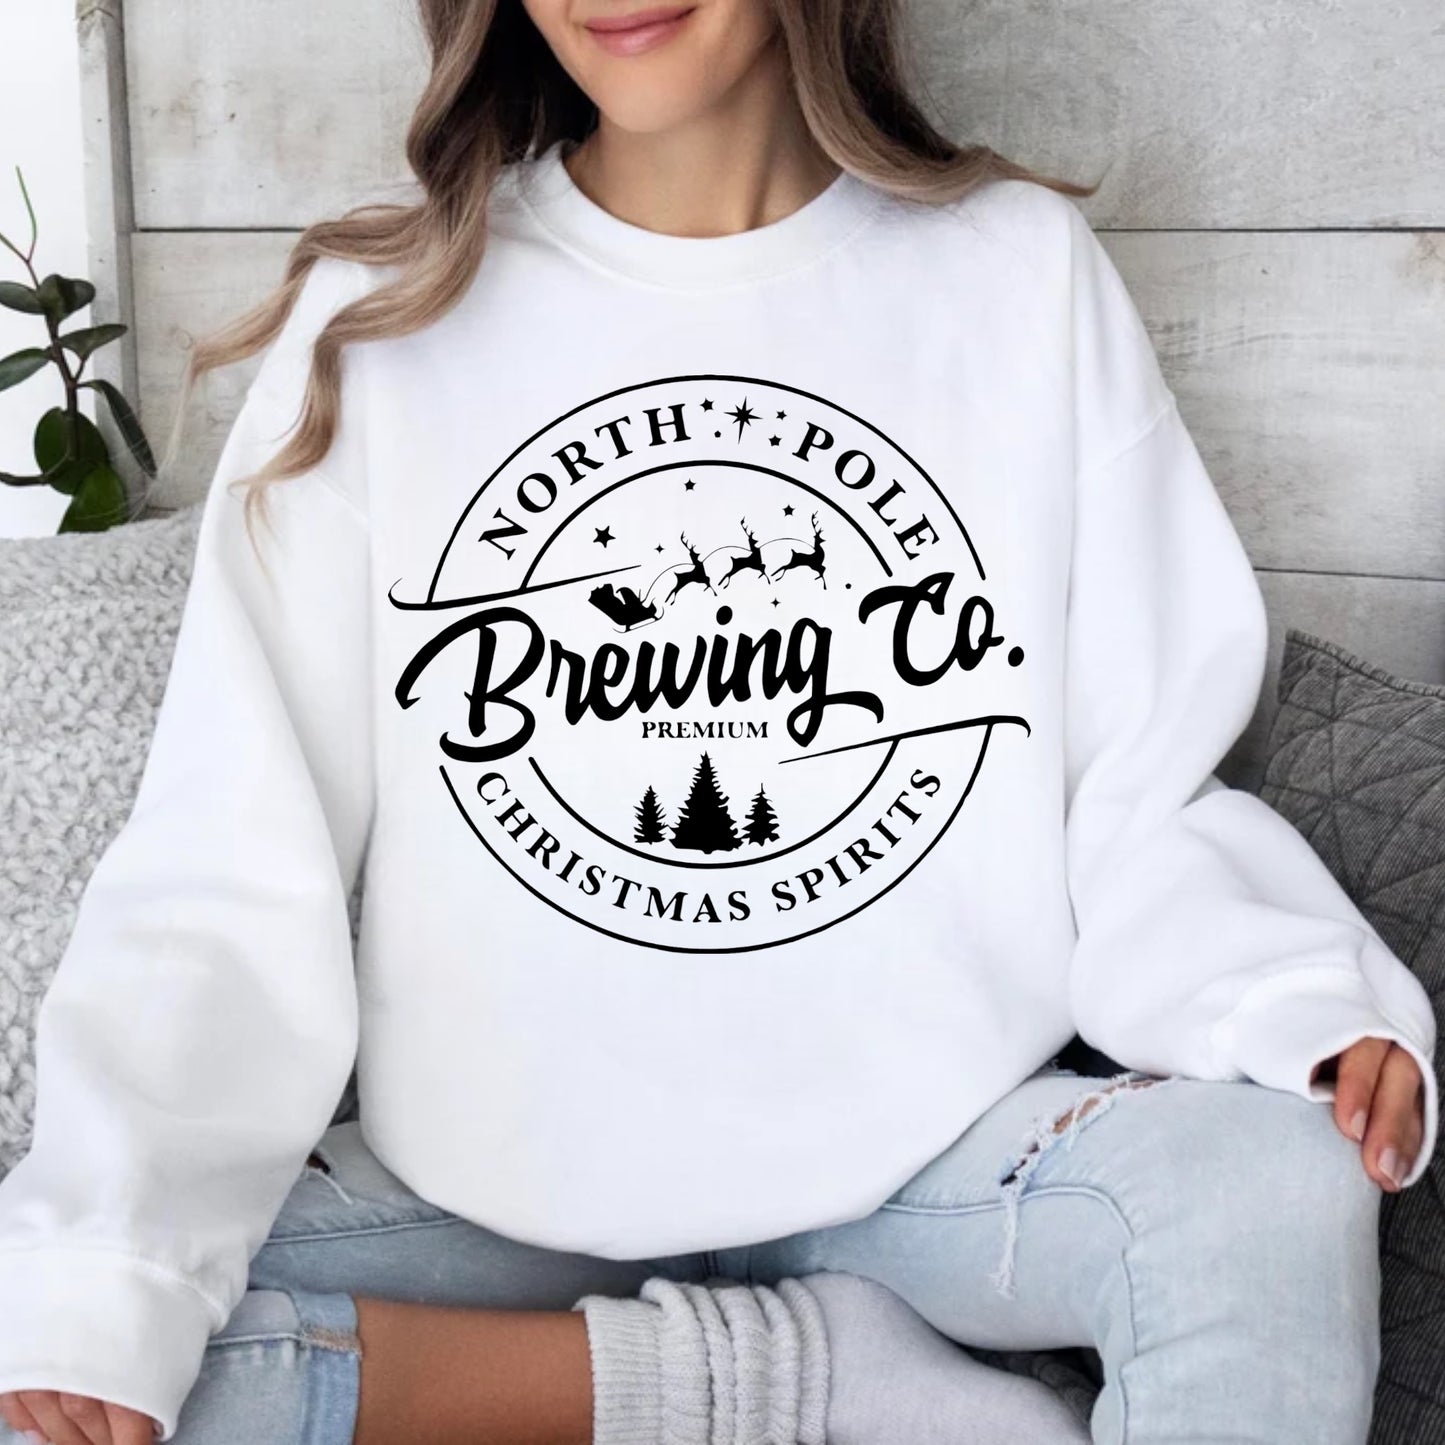 North Pole Brewing Company- Tee or Crewneck Sweatshirt